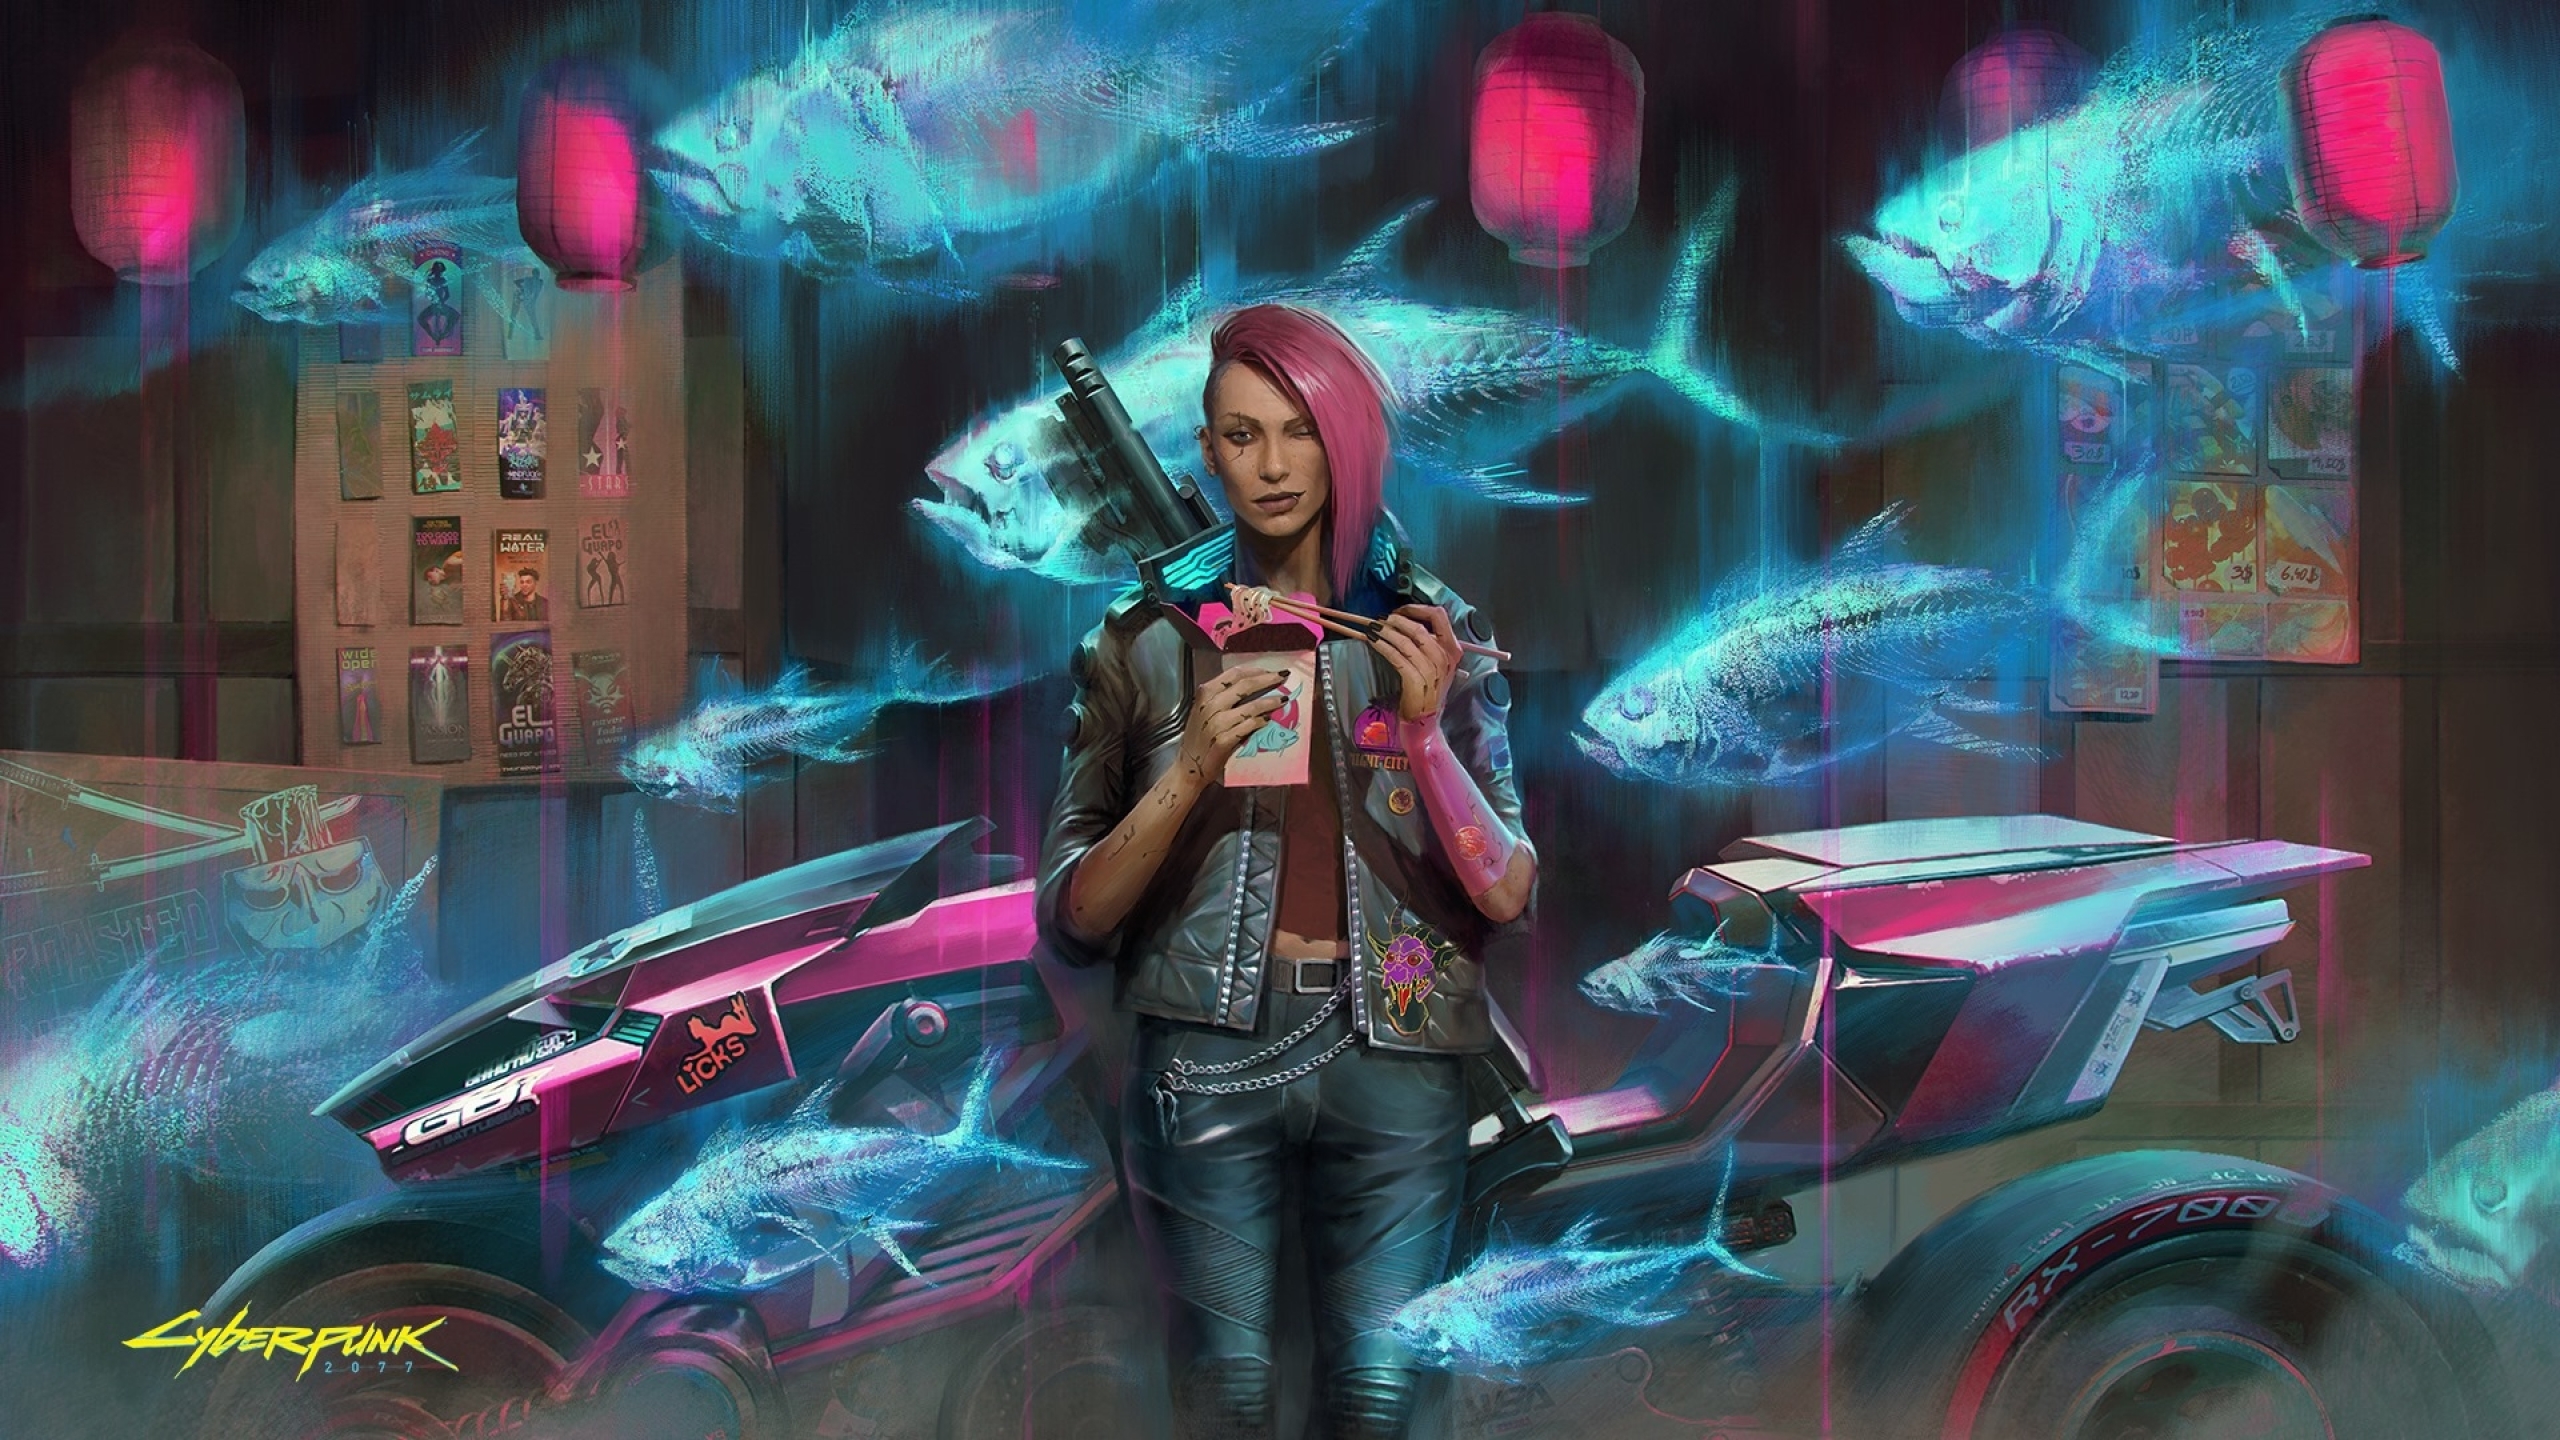 2560x1440] Cyberpunk Warrior Girl : r/wallpaper